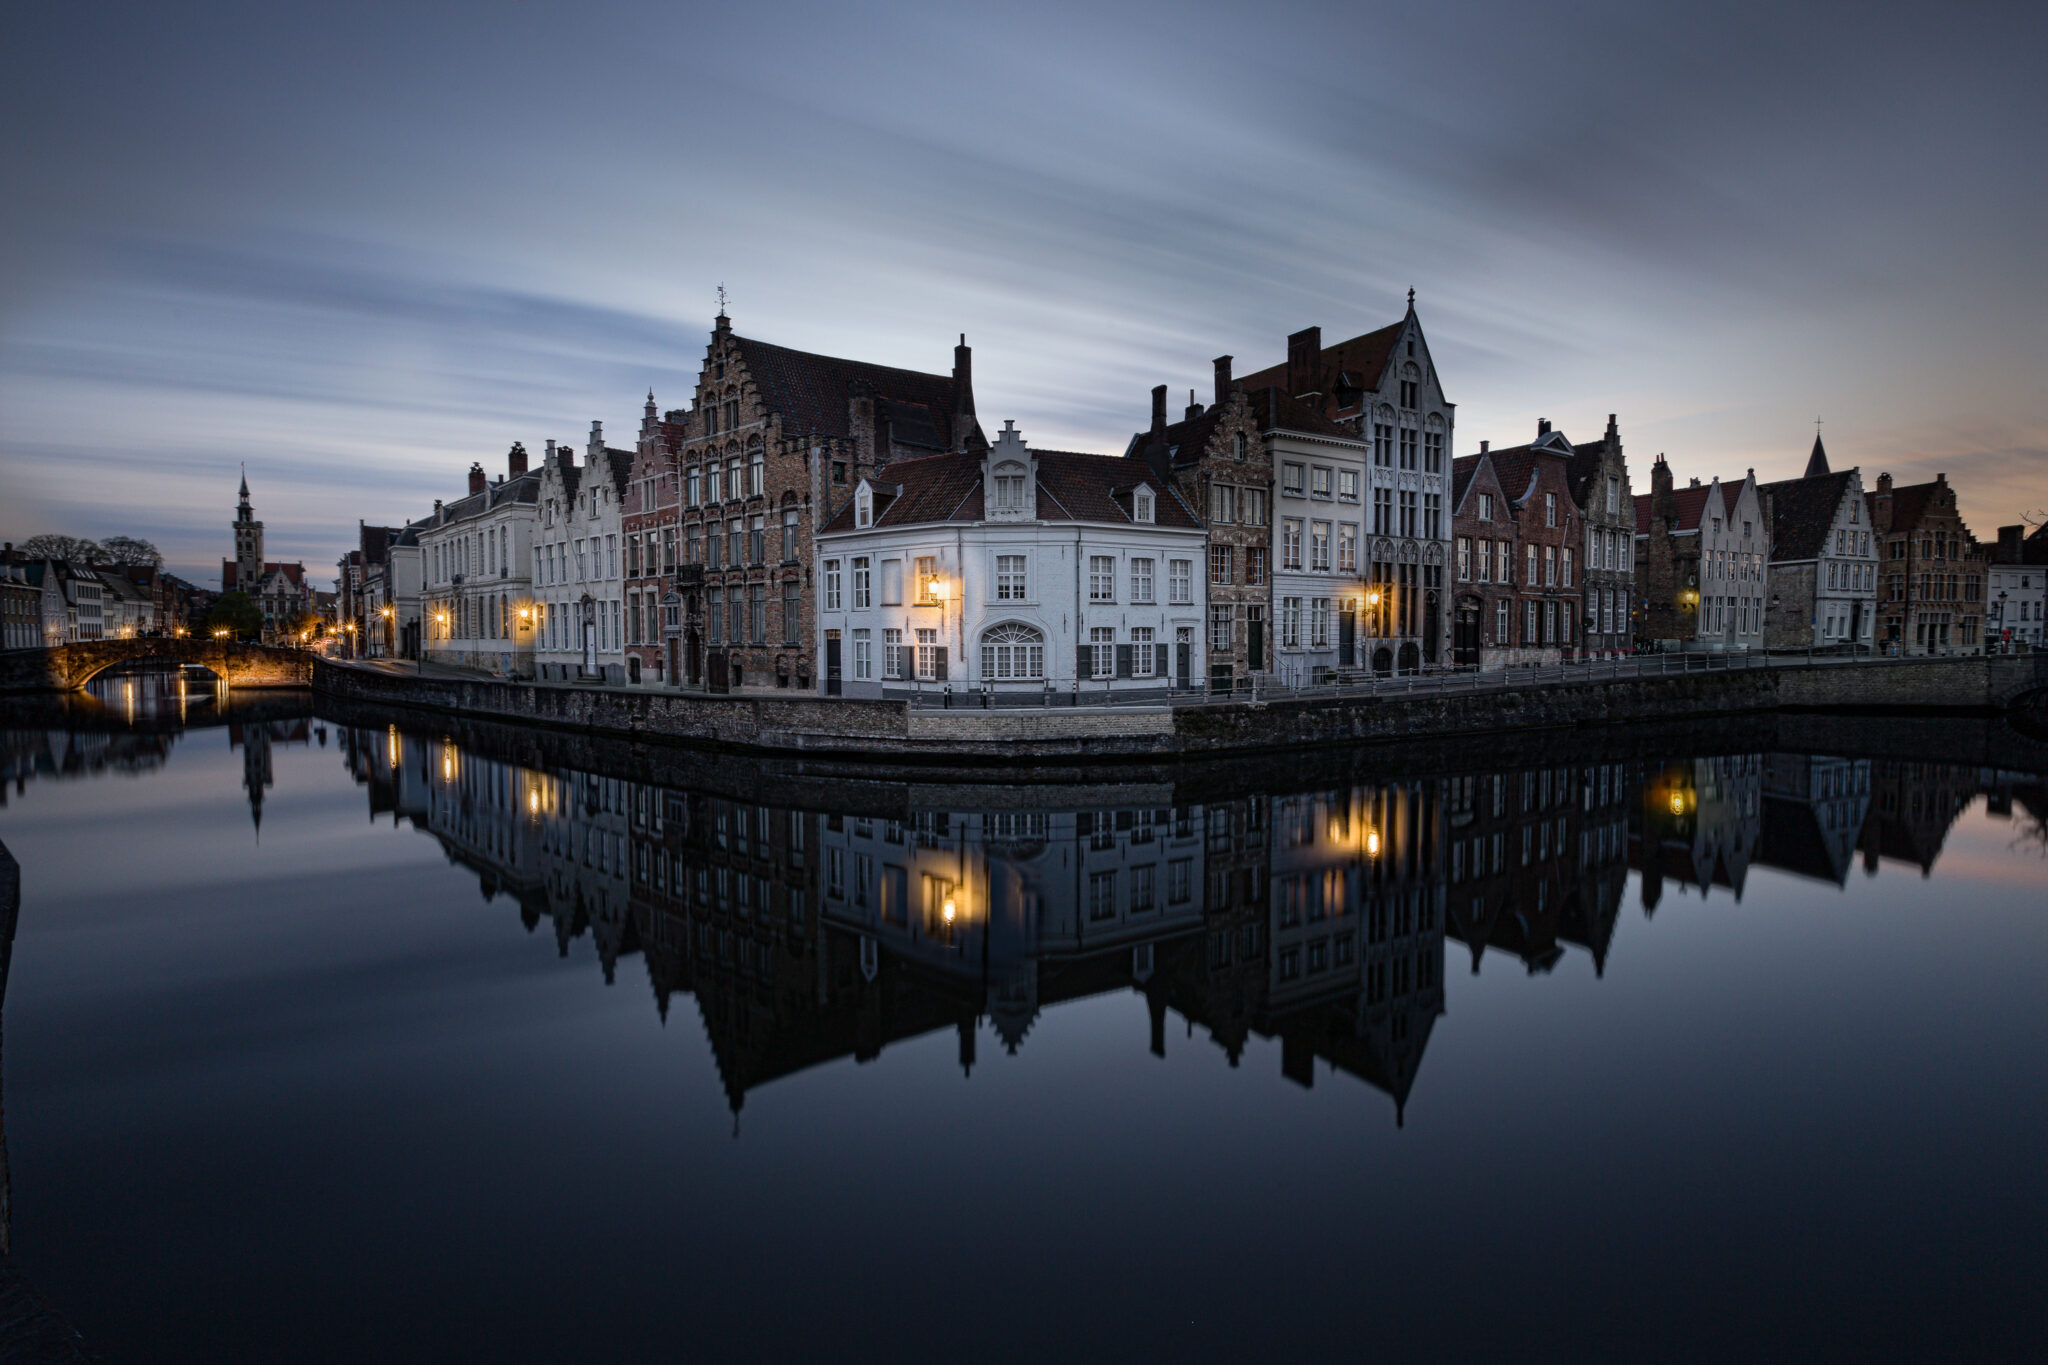 Cityscape - Bruges by Night - Spiegelrei - Fotografie Krist